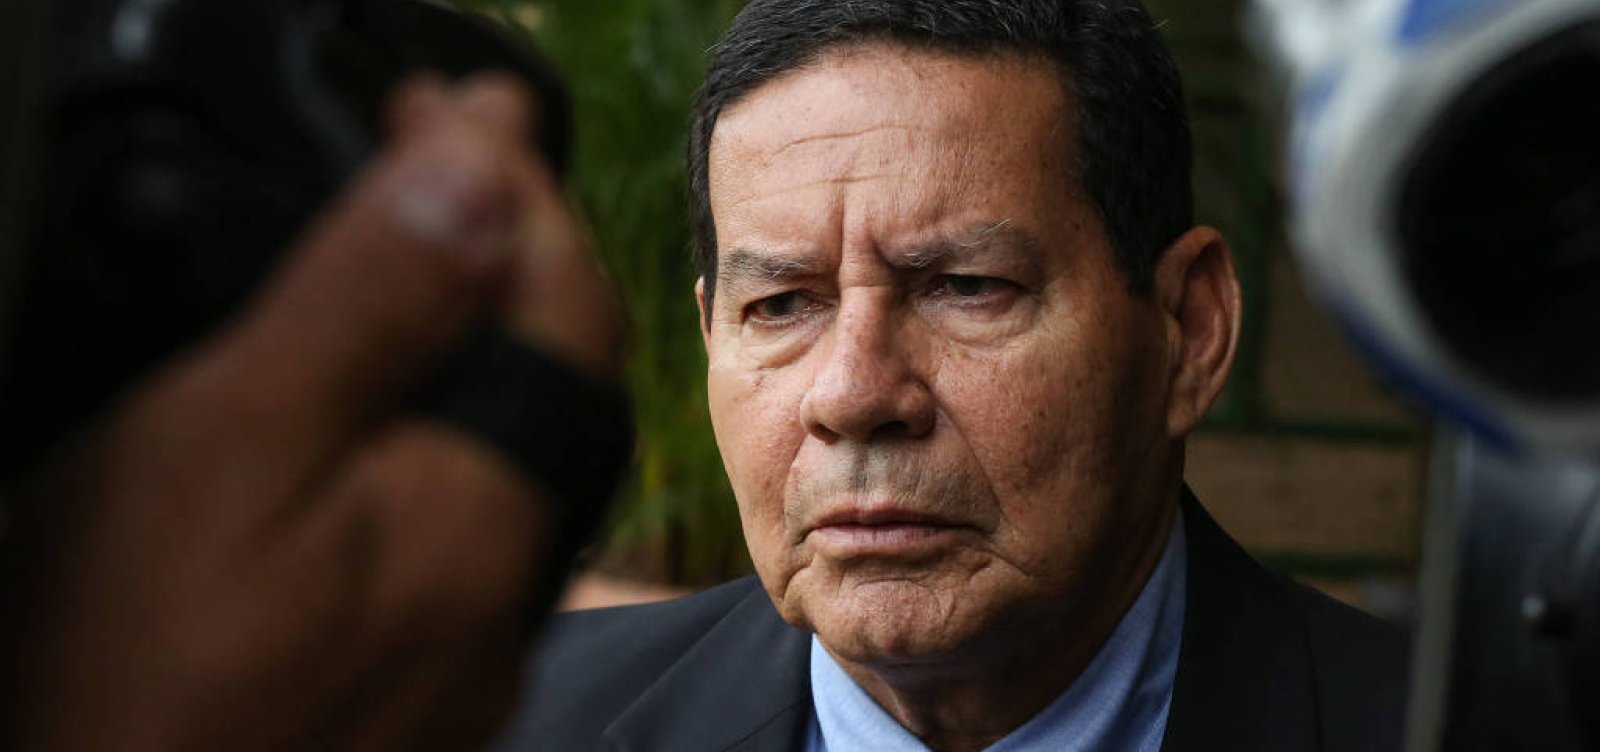 Caso de Flávio Bolsonaro não tem nada a ver com governo, diz Mourão